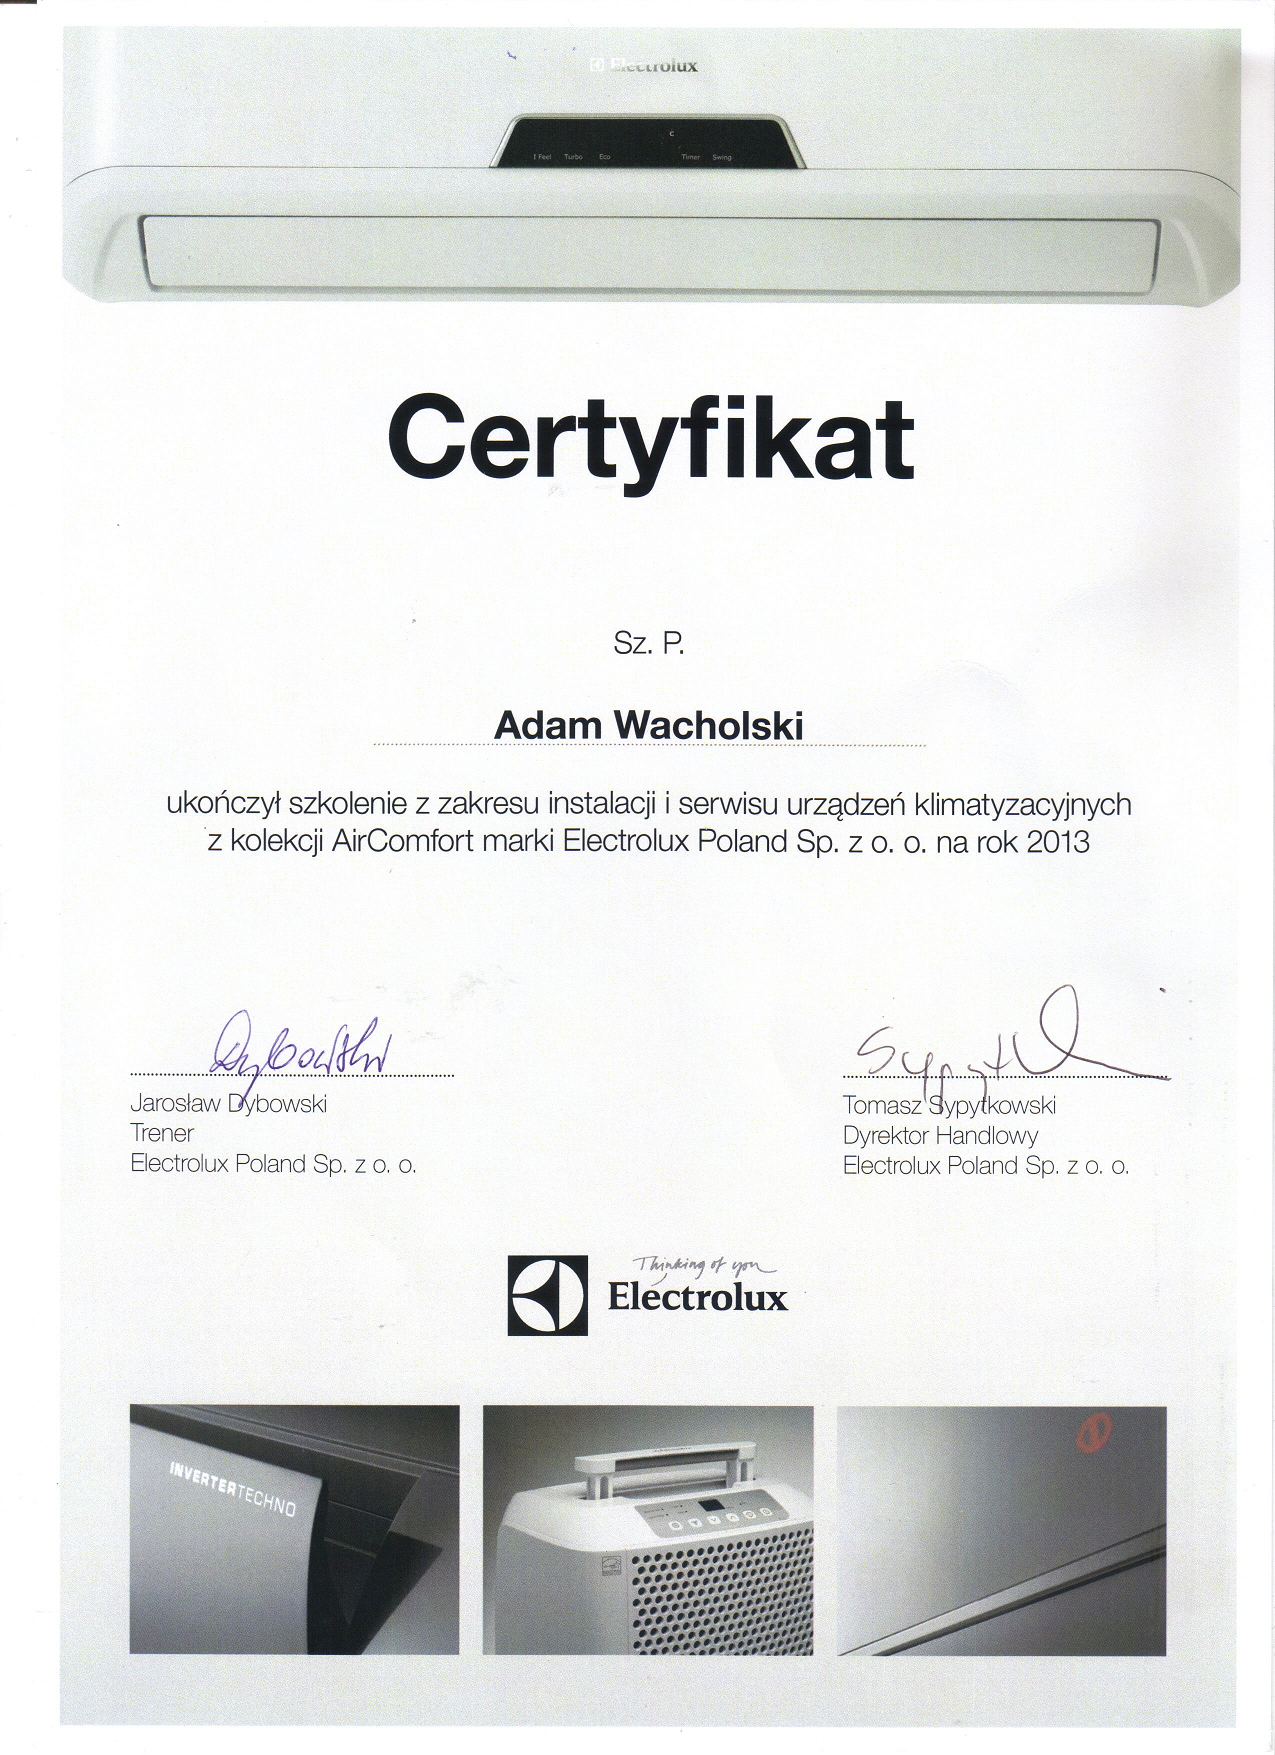 2013-certyfikat-electrolux-adam-wacholski